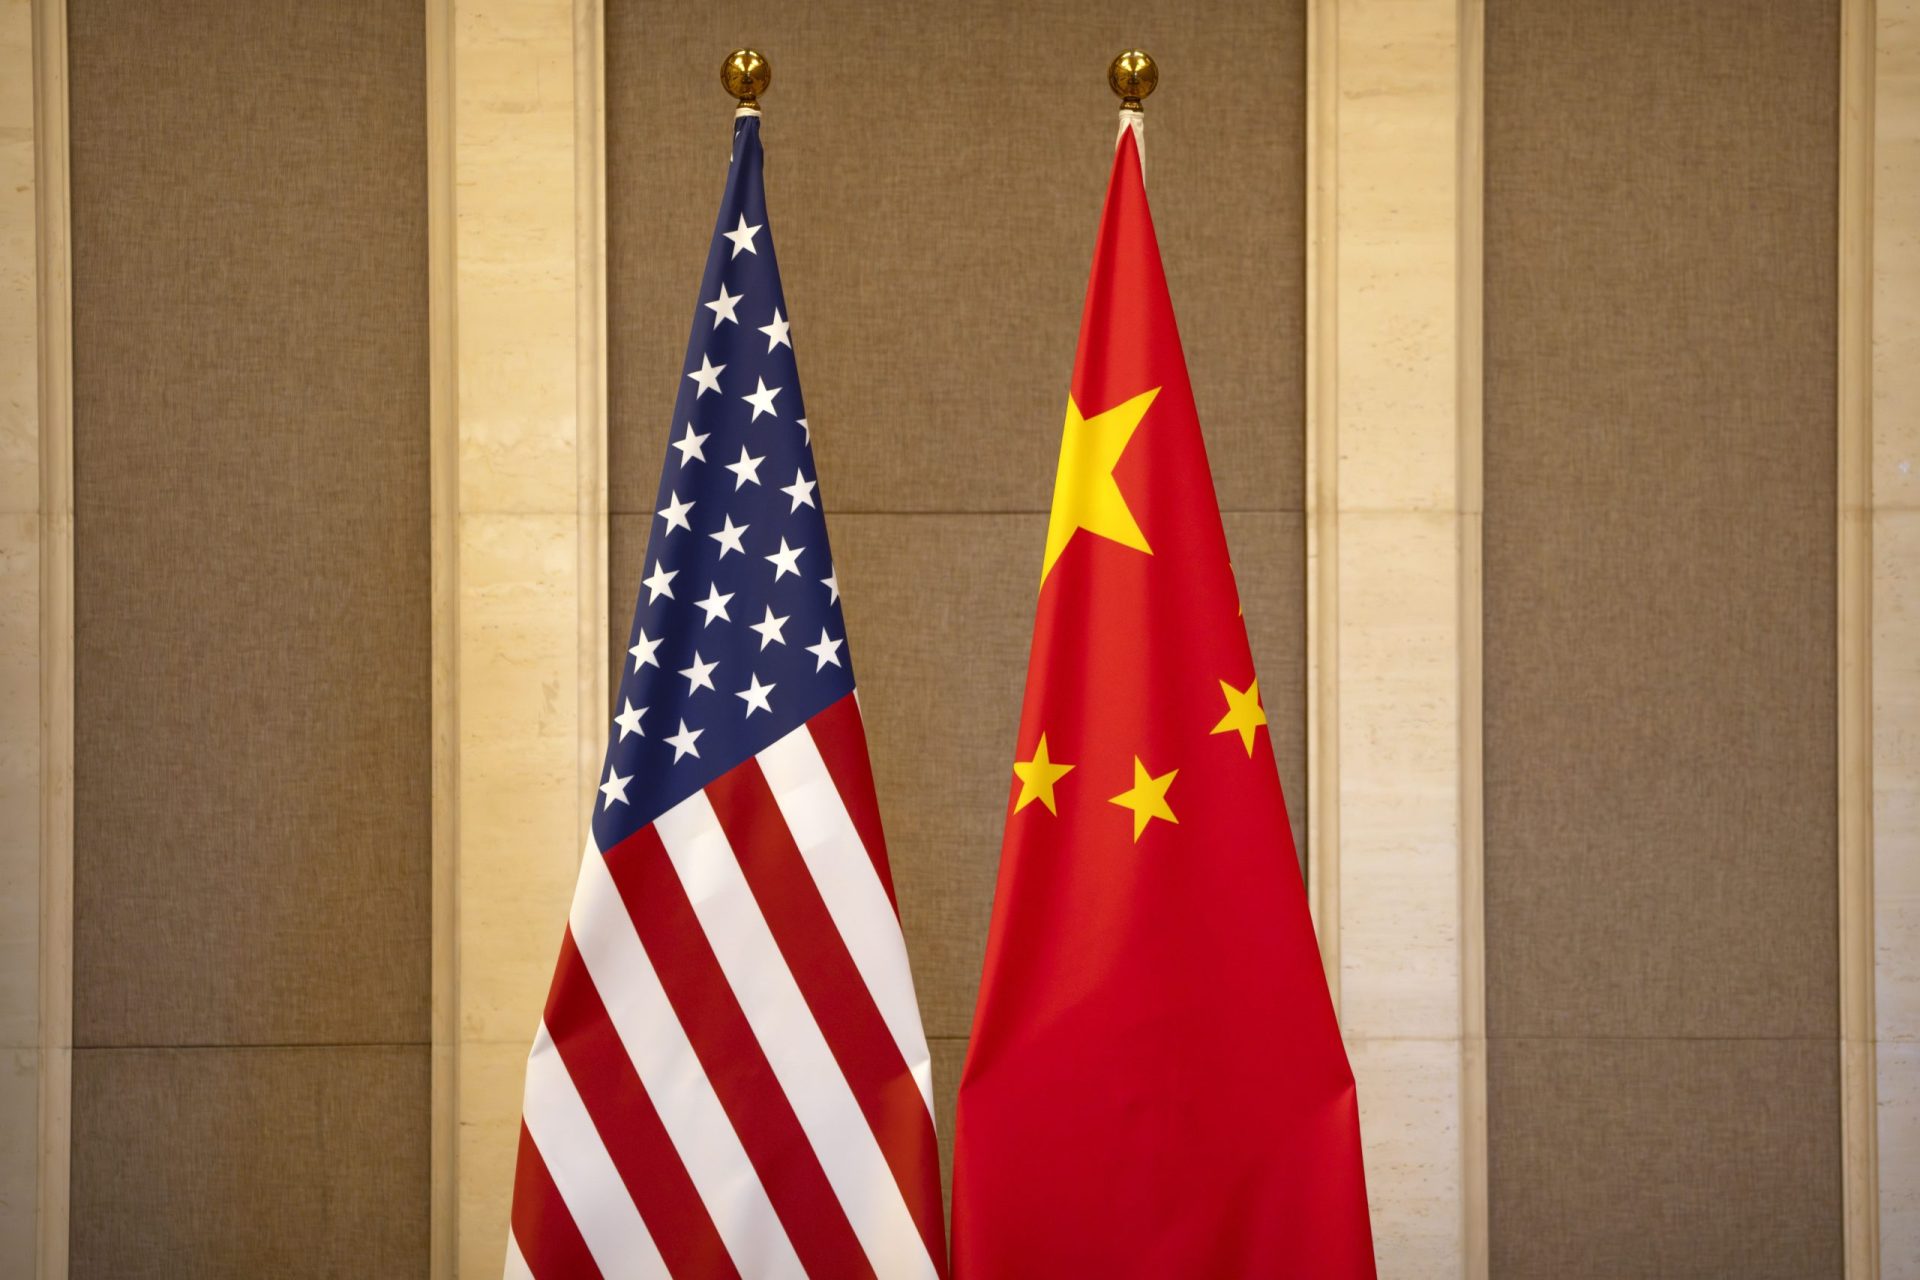 États-Unis mieux vus, Chine décline en approbation